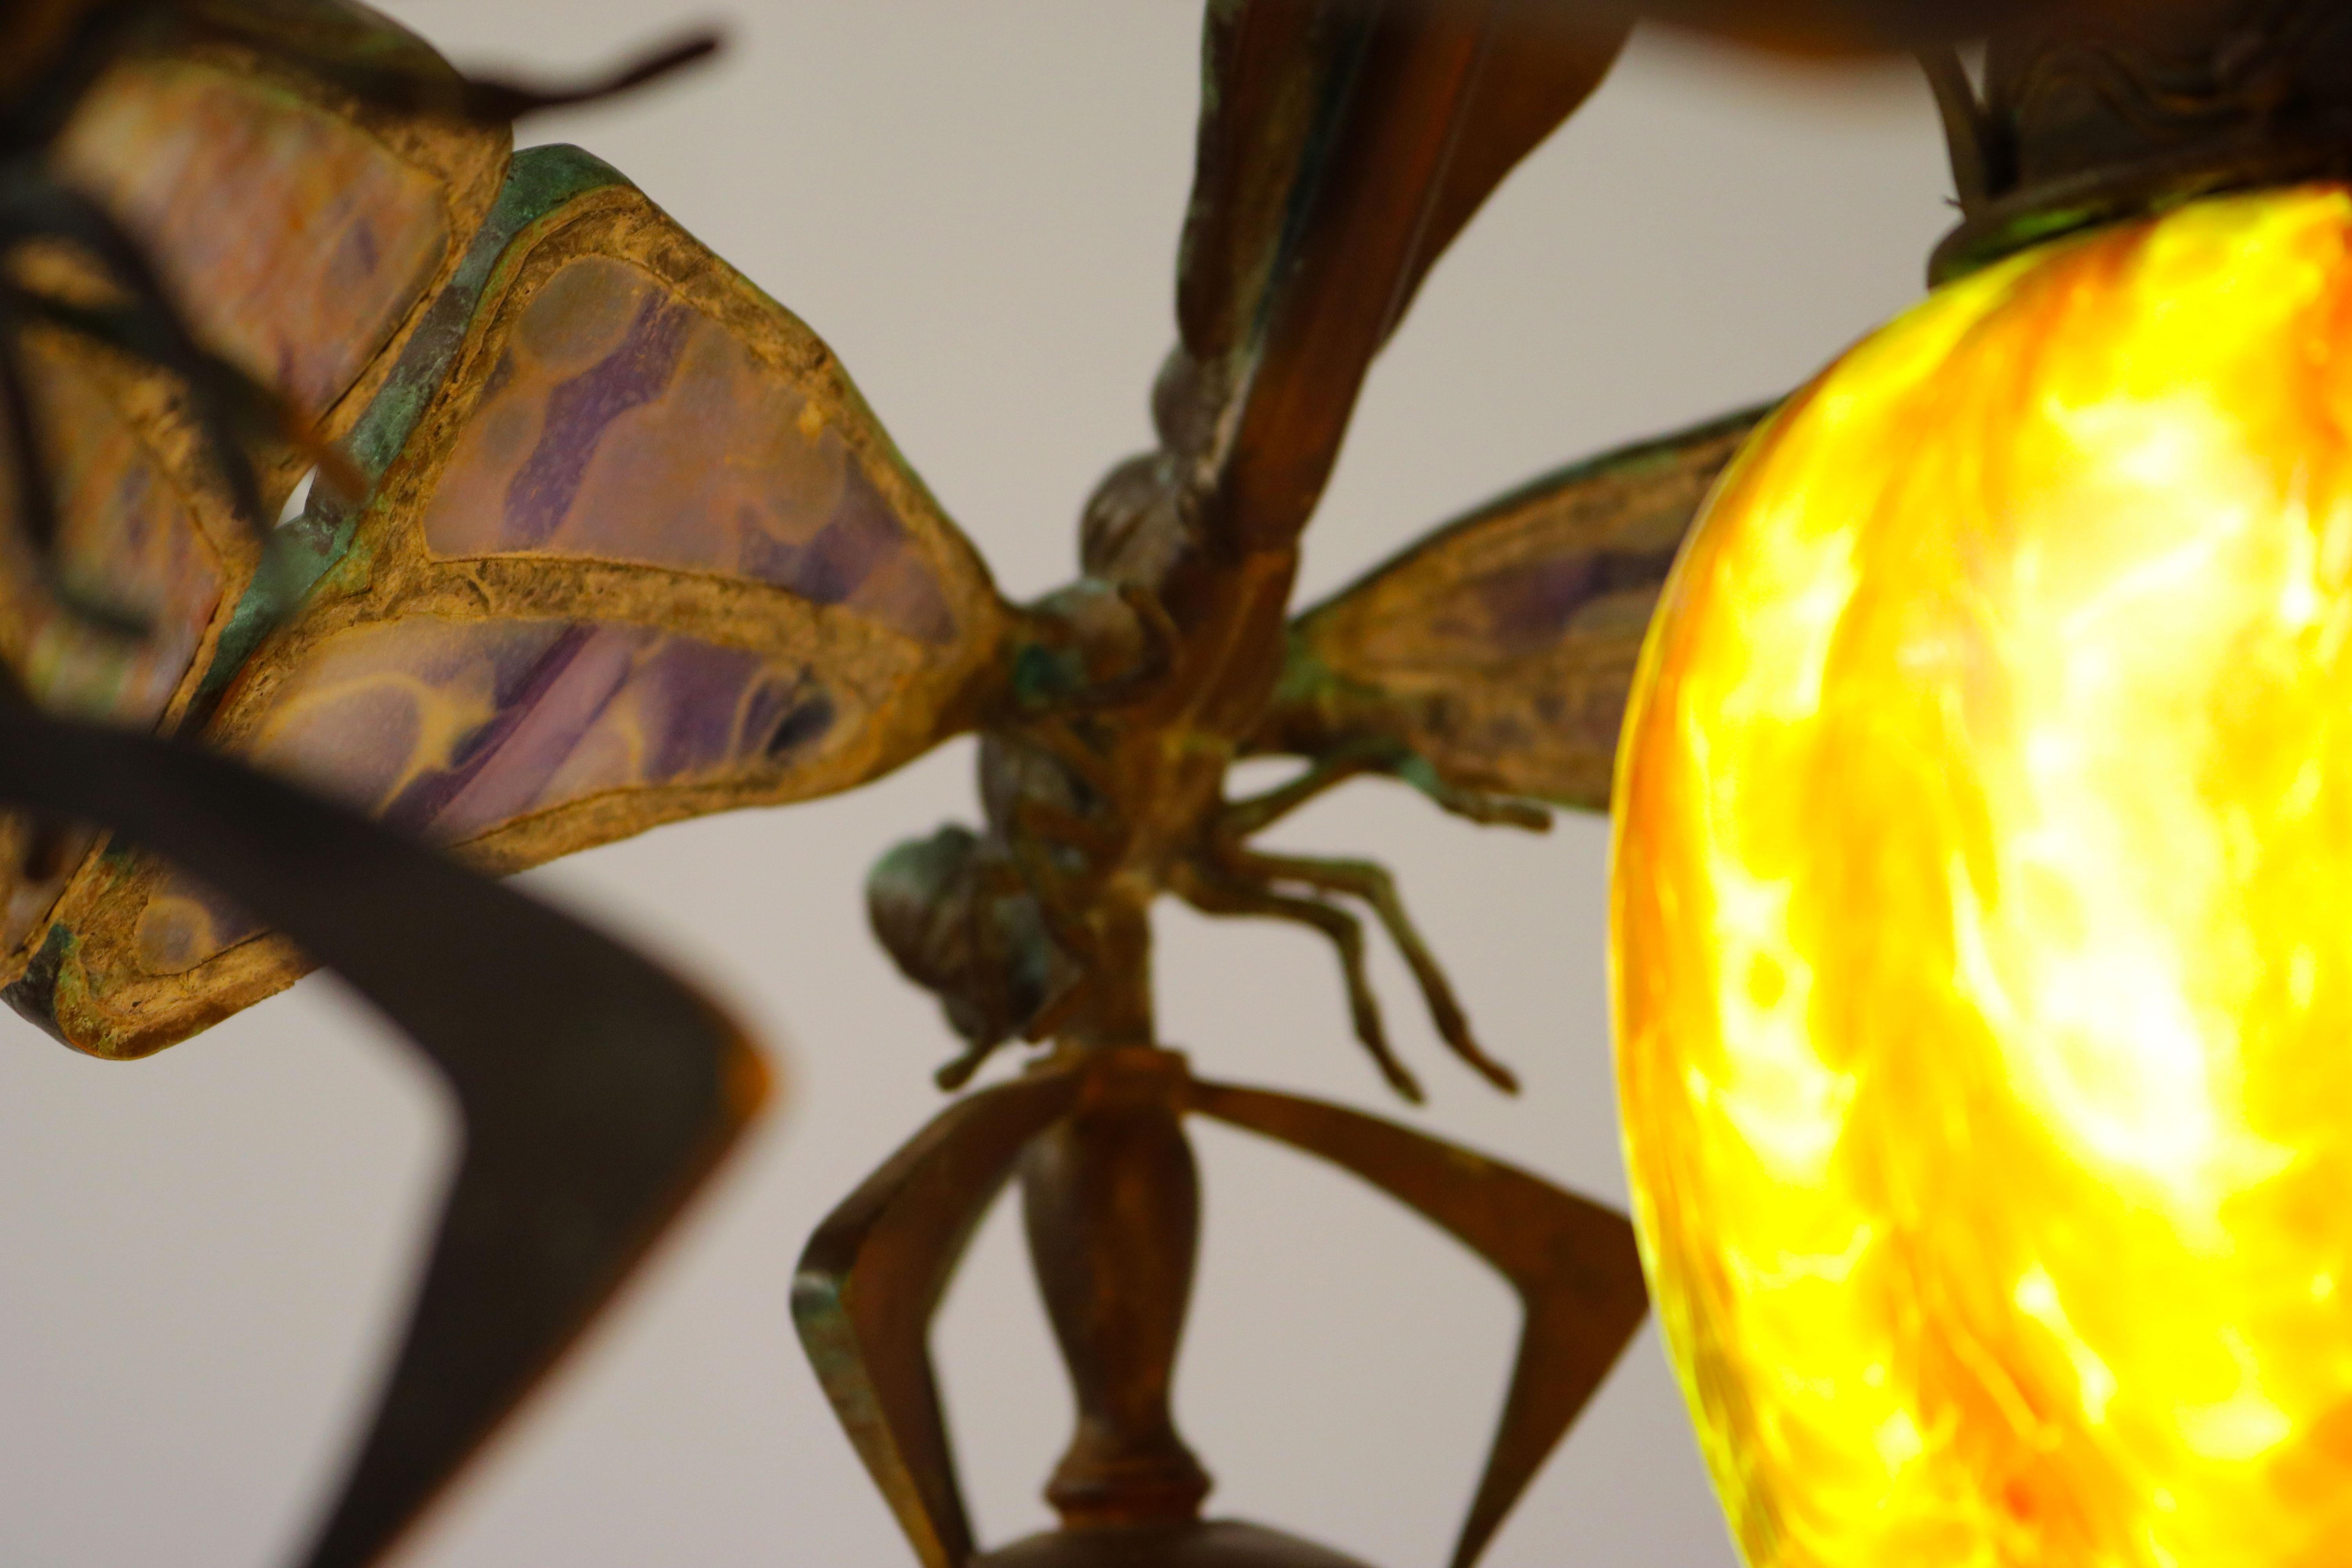 French Art Nouveau dragonfly chandelier 1900 Jugendstil Bronze Iridescent Glass 8